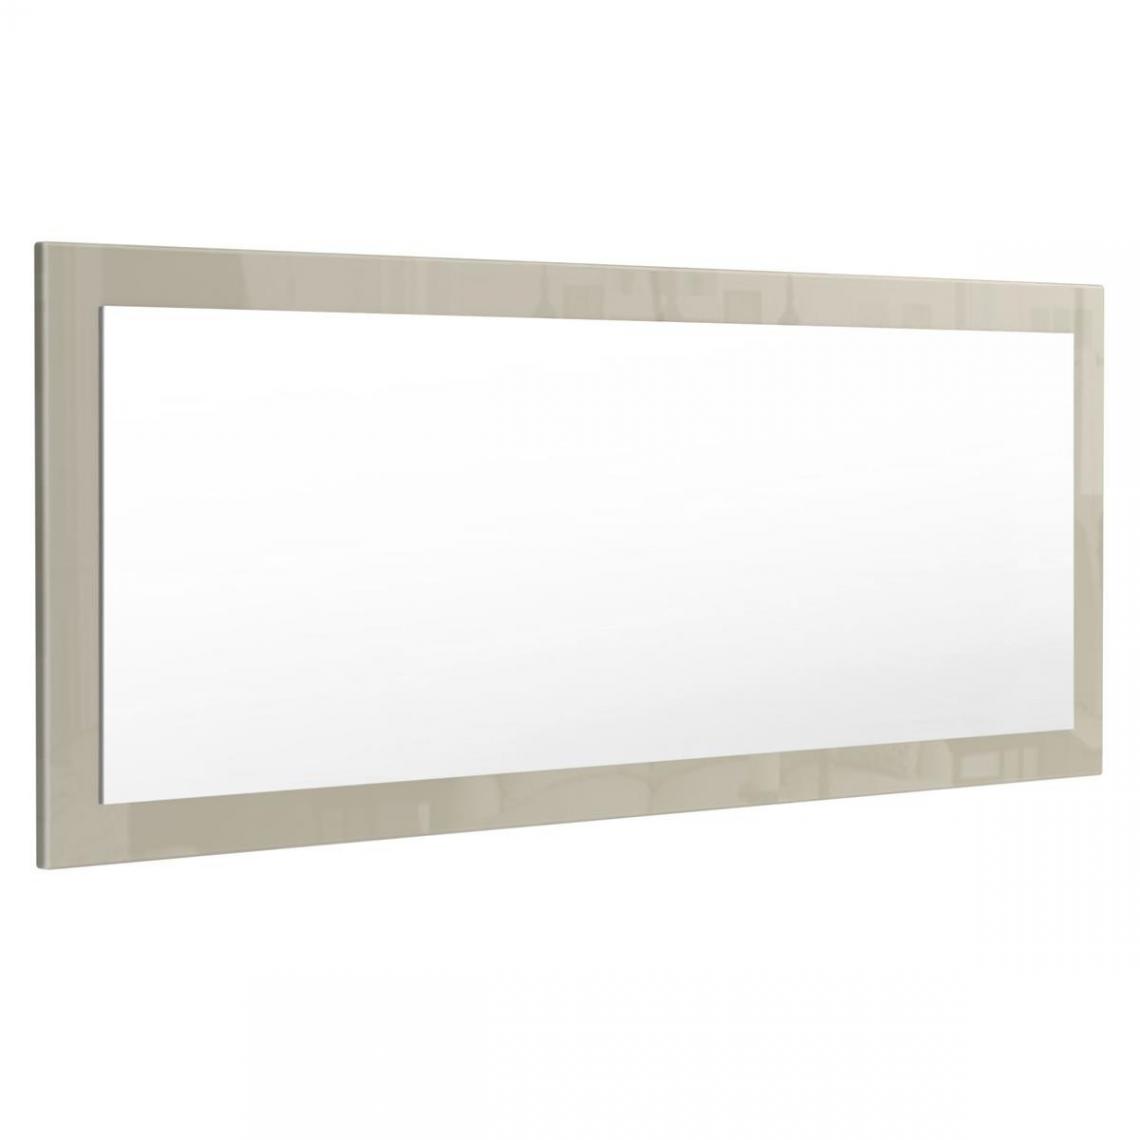 Mpc - Miroir gris sable brillant (HxLxP): 139 x 55 x 2 - Miroir de salle de bain